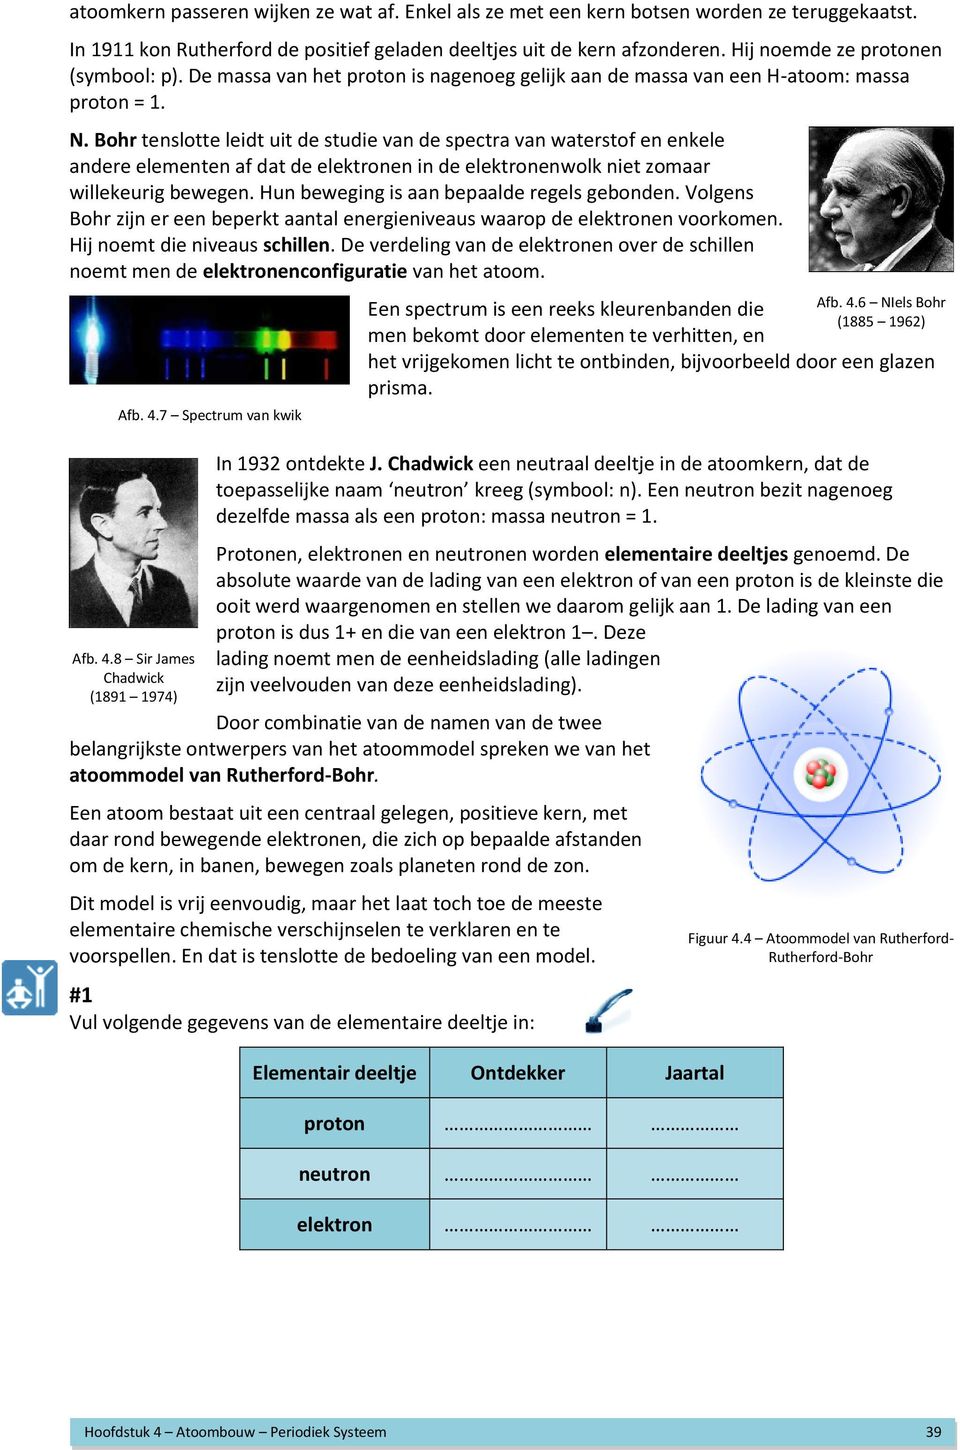 Bohr tenslotte leidt uit de studie van de spectra van waterstof en enkele andere elementen af dat de elektronen in de elektronenwolk niet zomaar willekeurig bewegen.